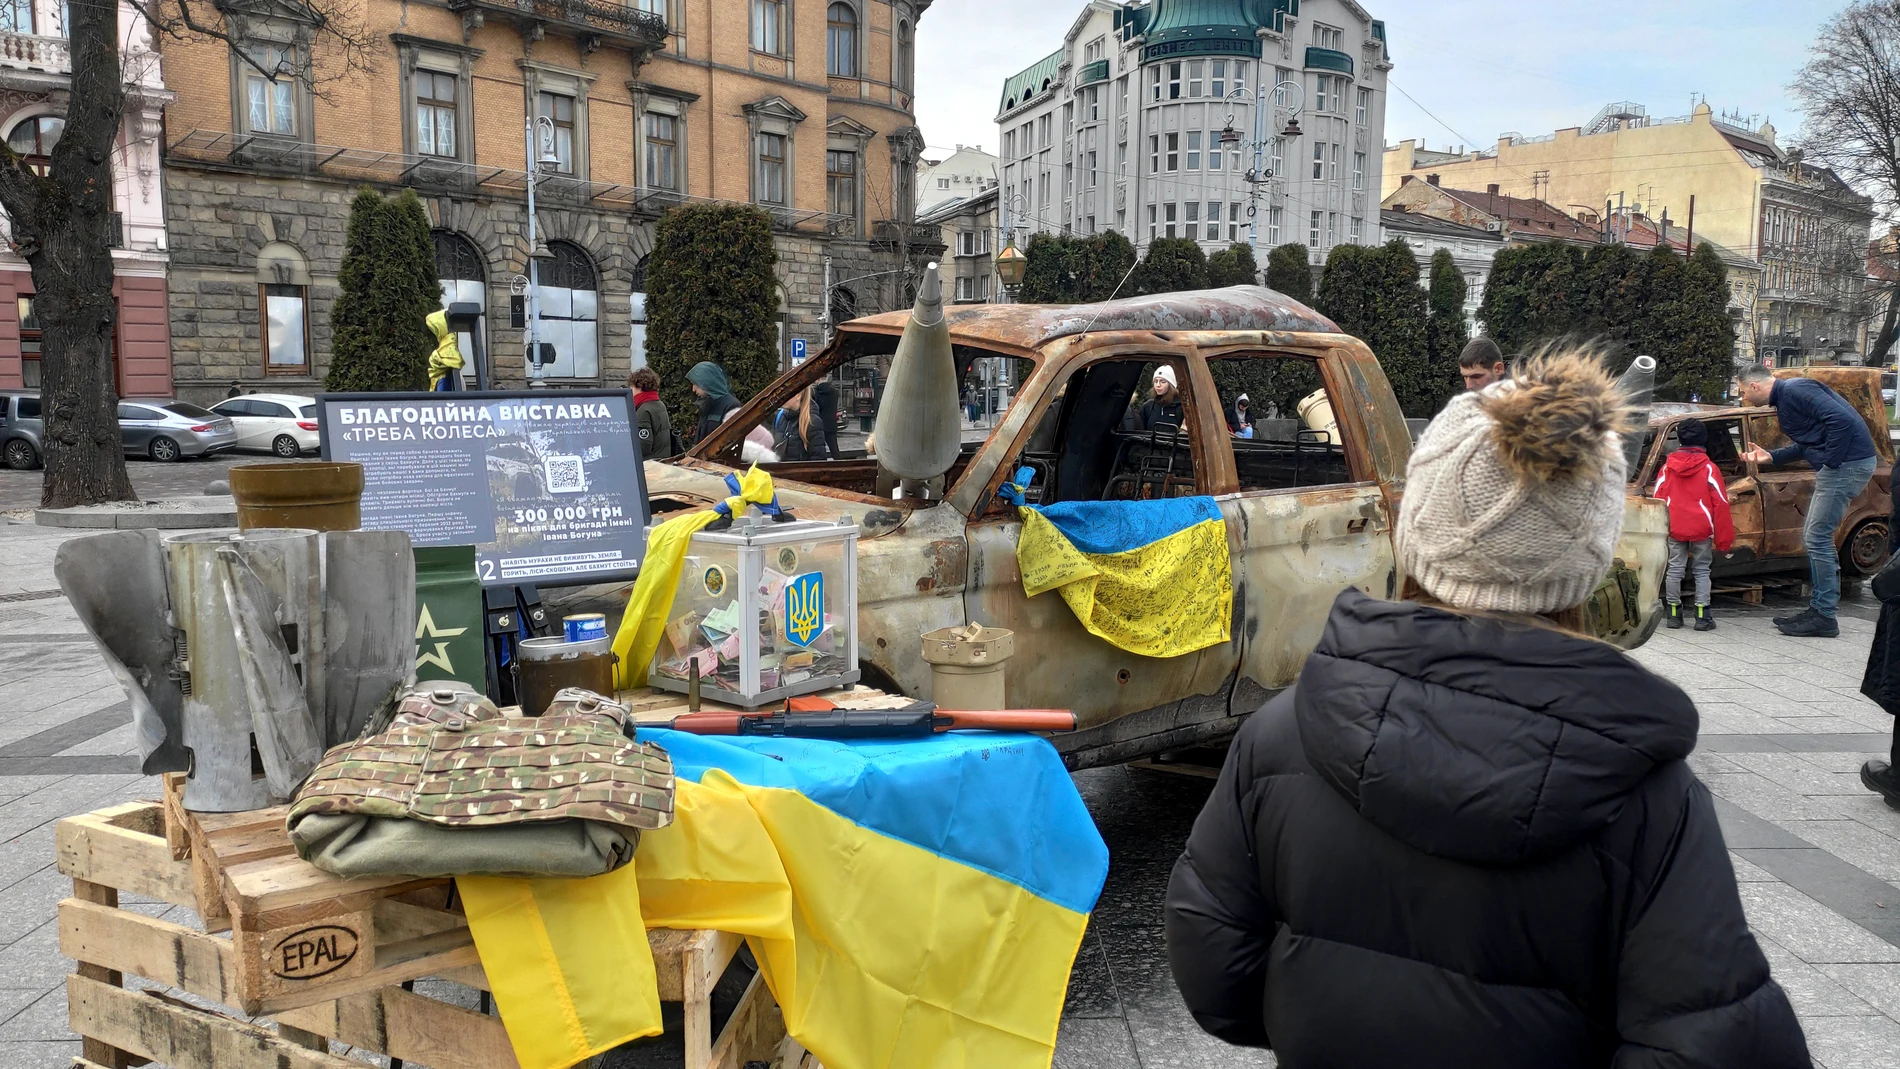 Centro de Lviv. Varios millones de ucranianos desplazados internos reciben el Año Nuevo lejos de sus hogares ocupados o bombardeados, mientras reconstruyen sus vidas en medio de los continuos ataques rusos y cortes de electricidad.